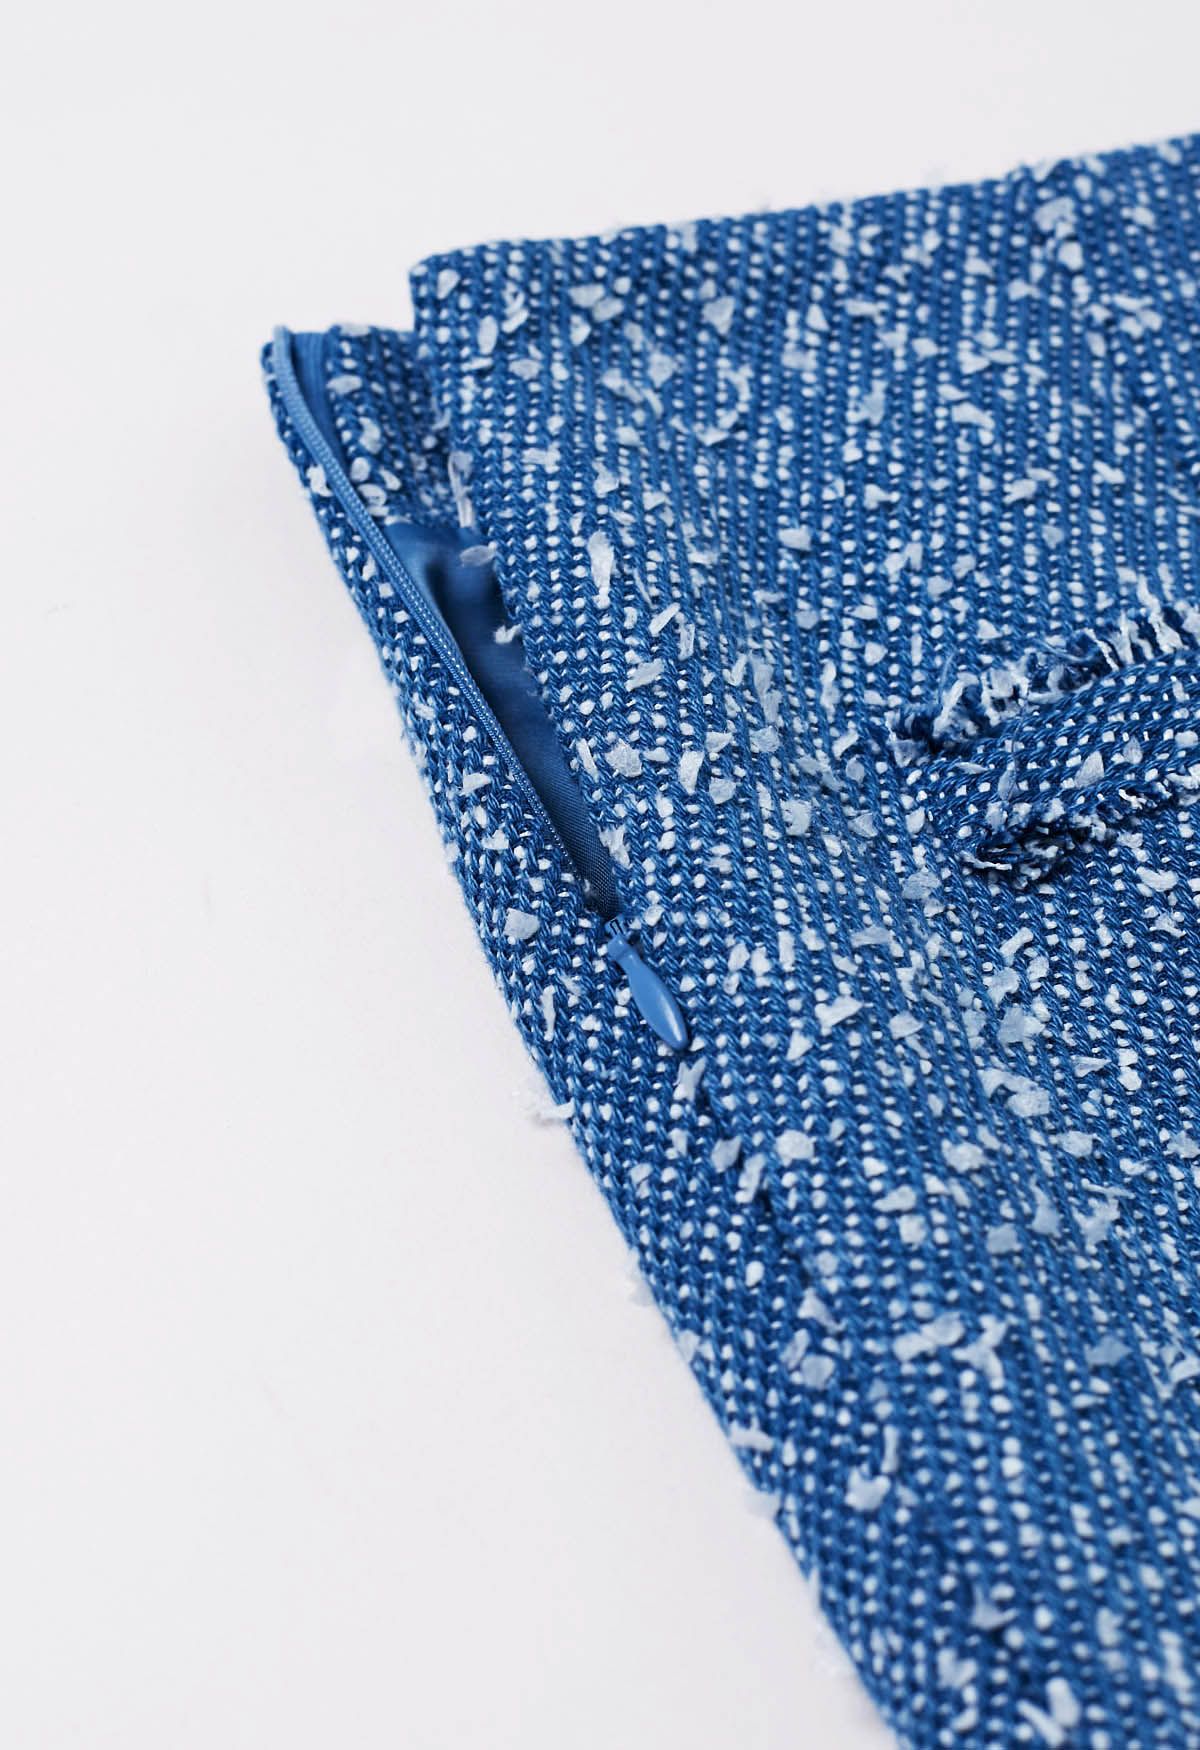 Mini-jupe en tweed boutonnée de couleurs mélangées en bleu